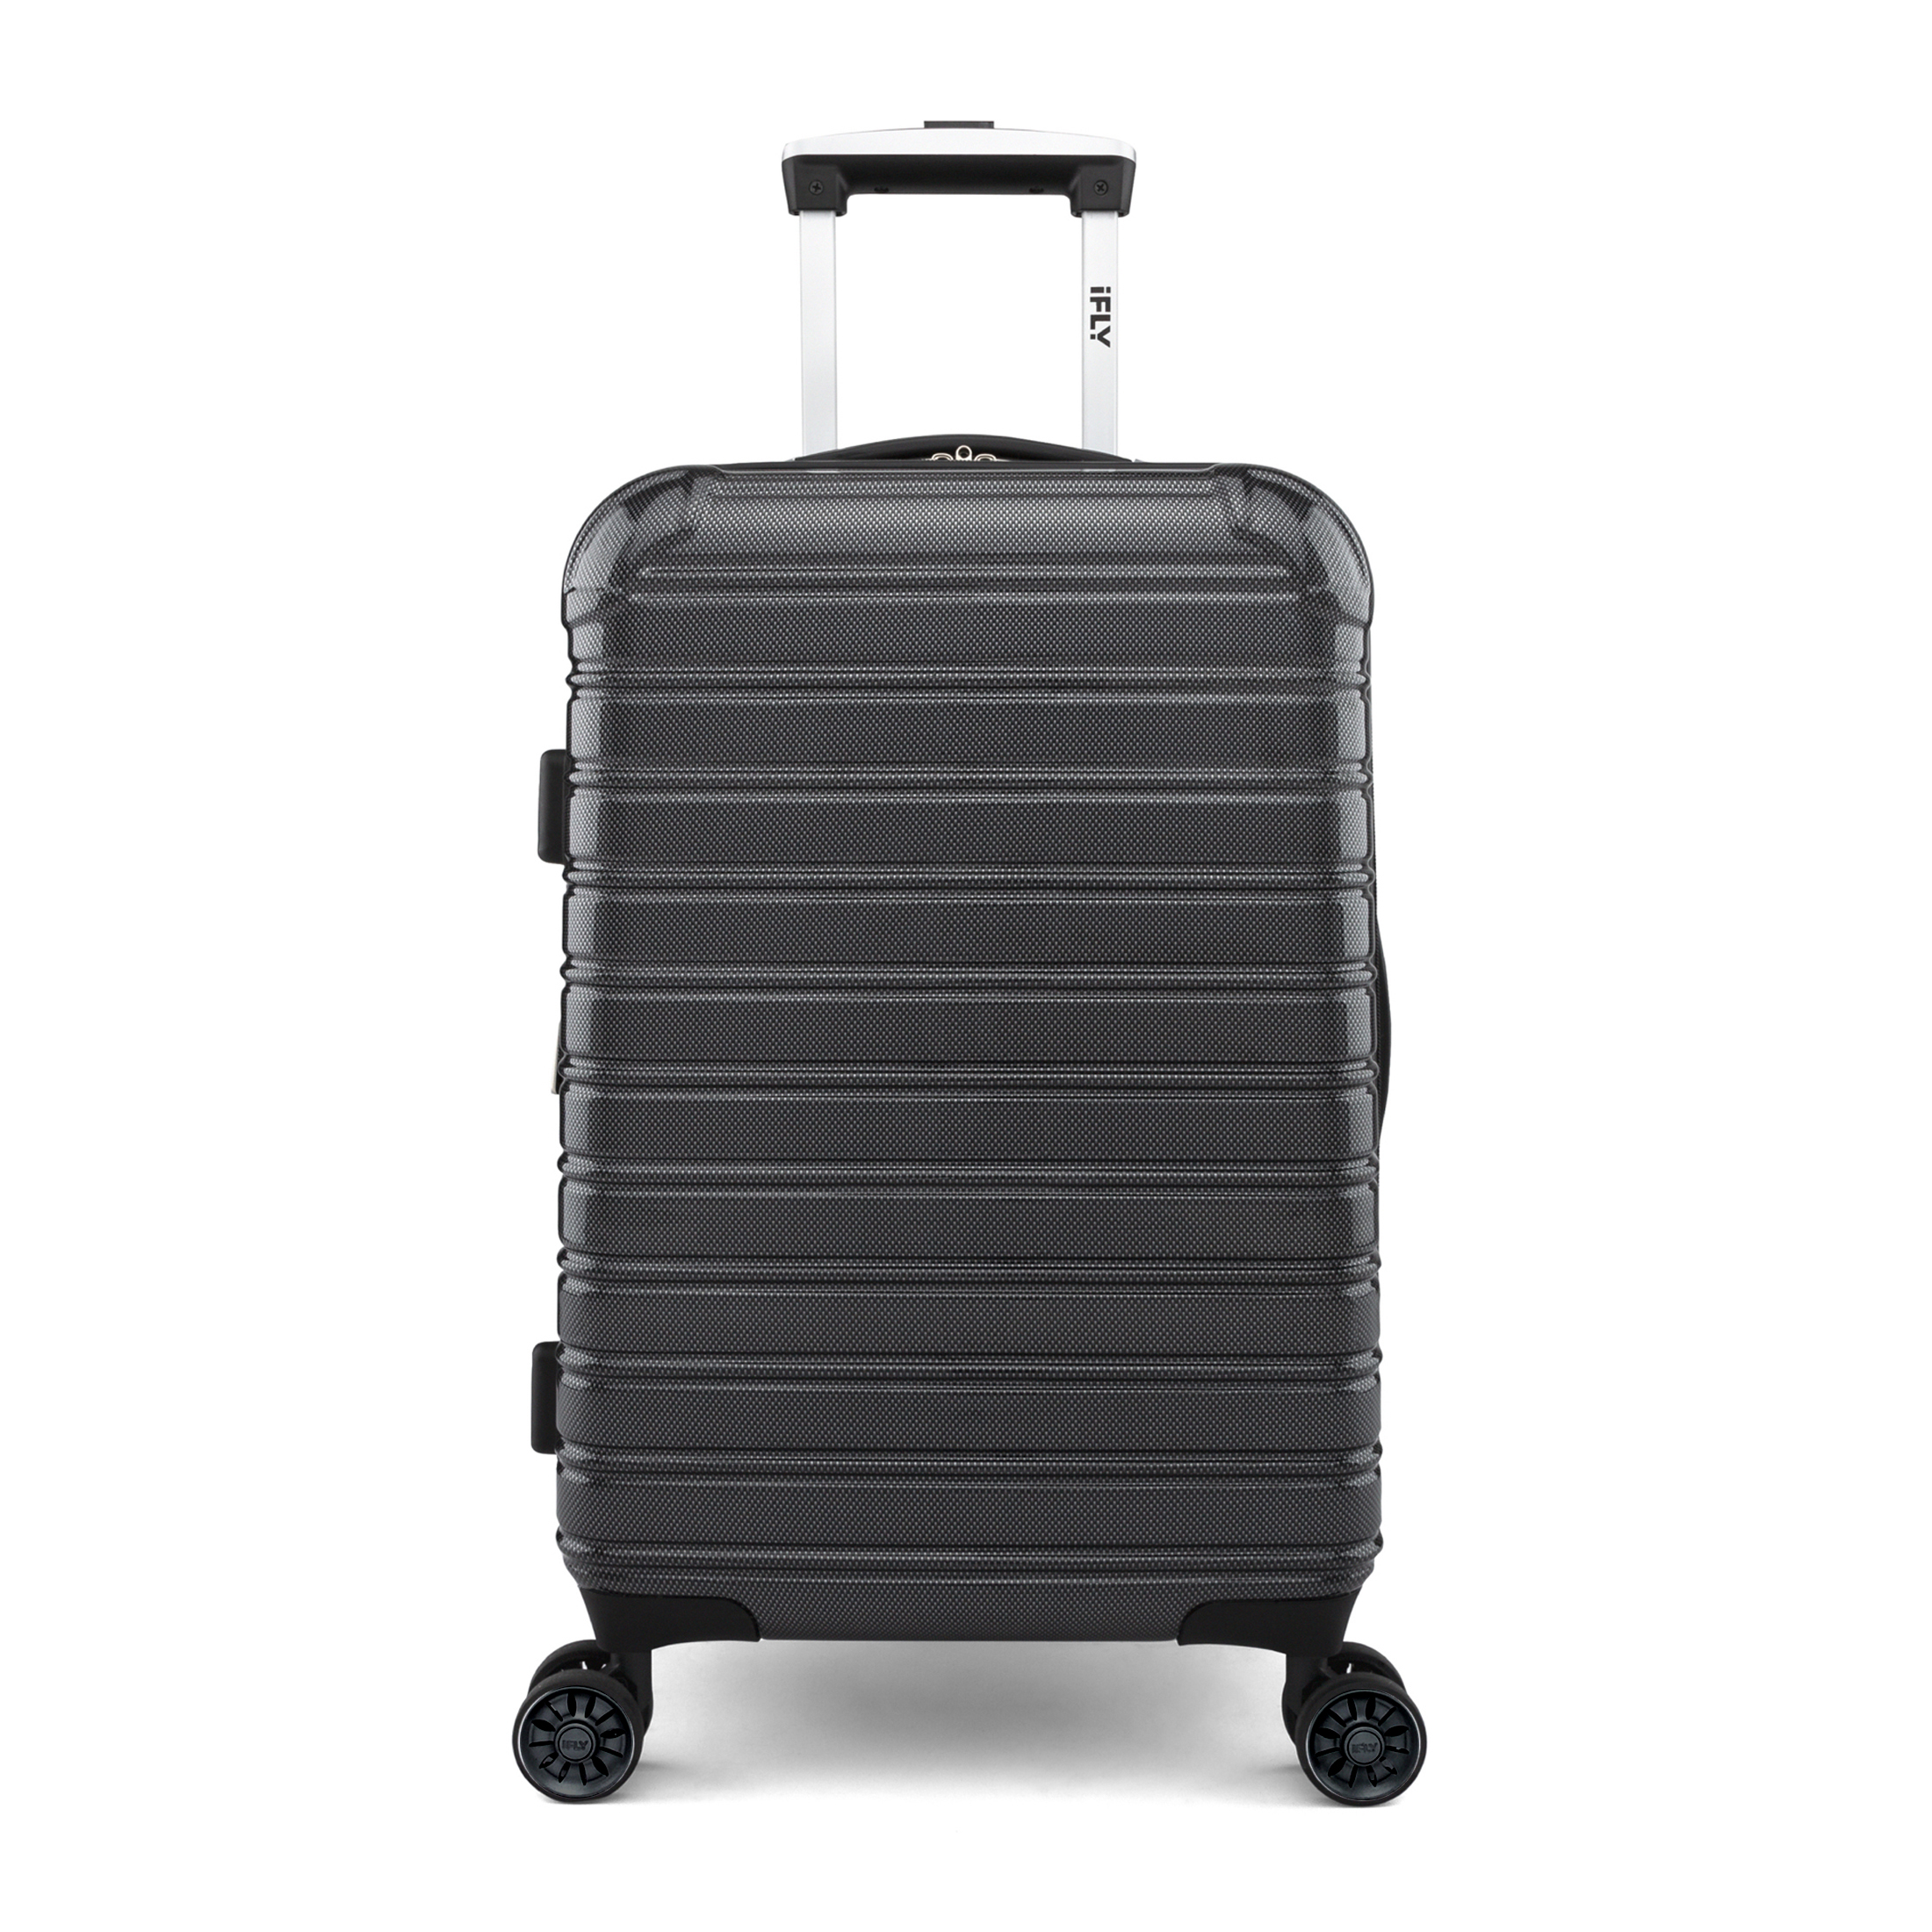 iFLY Hardside Fibertech Luggage 20" Carry-on Luggage, Black - image 1 of 10